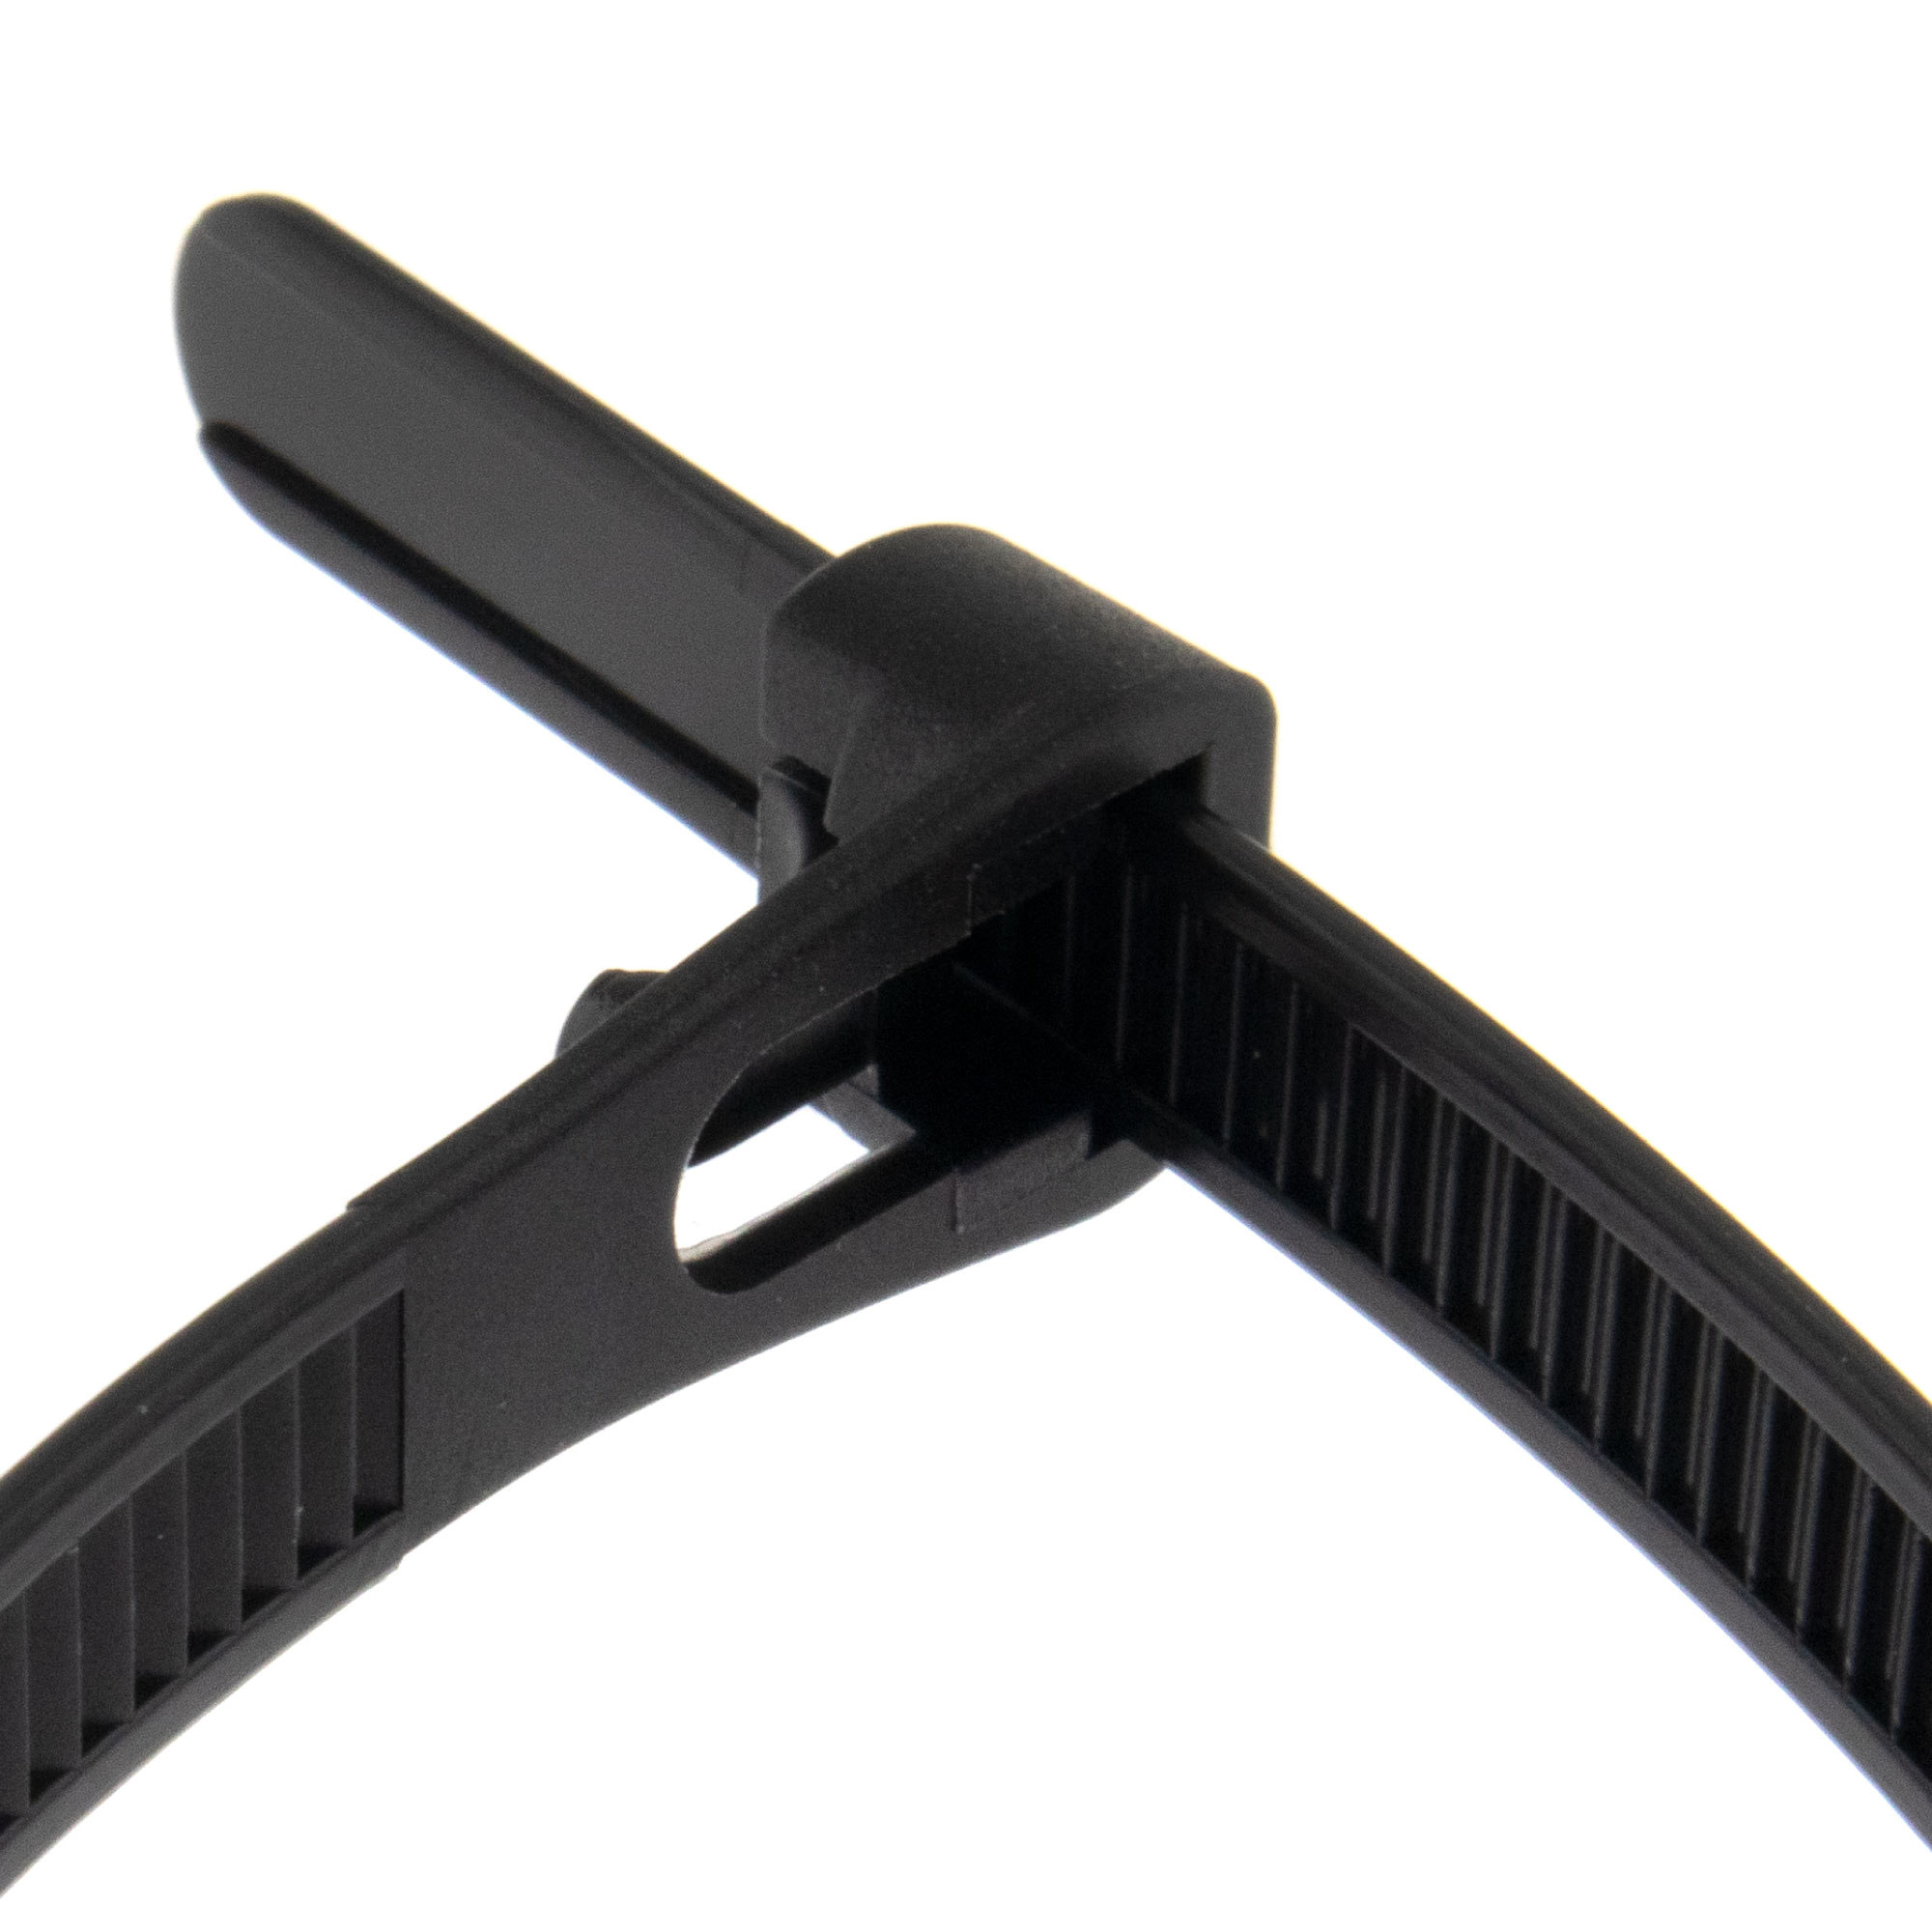 Cable tie releasable 200 x 7,6mm, black, 100PCS